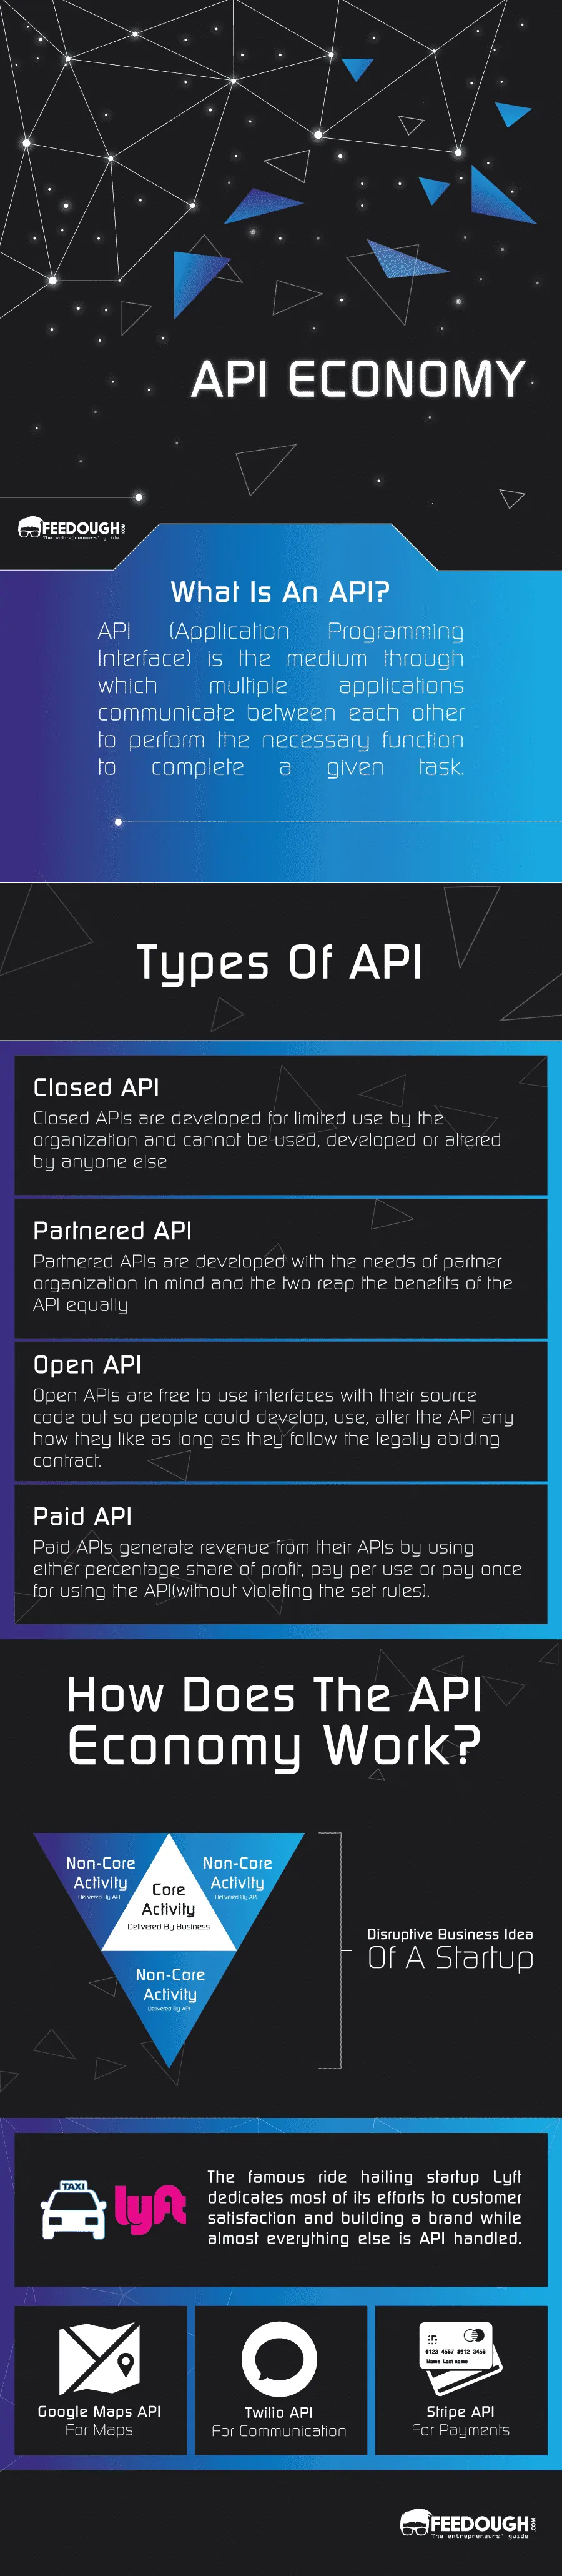 API Economy Infographic